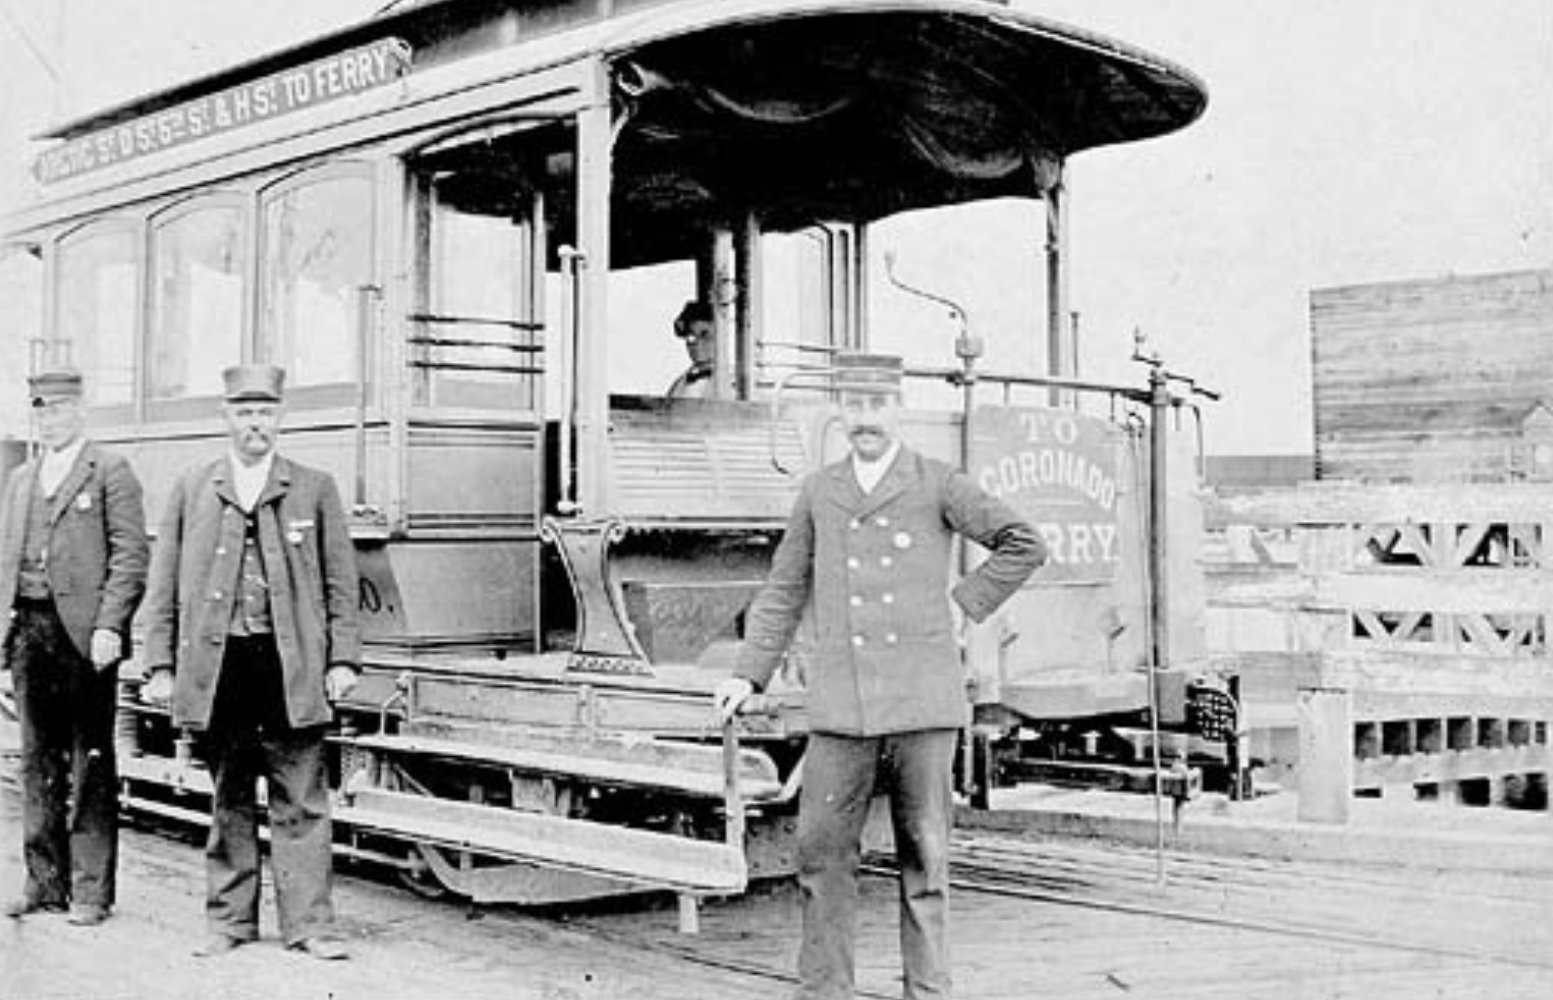 The Coronado Railroad Company